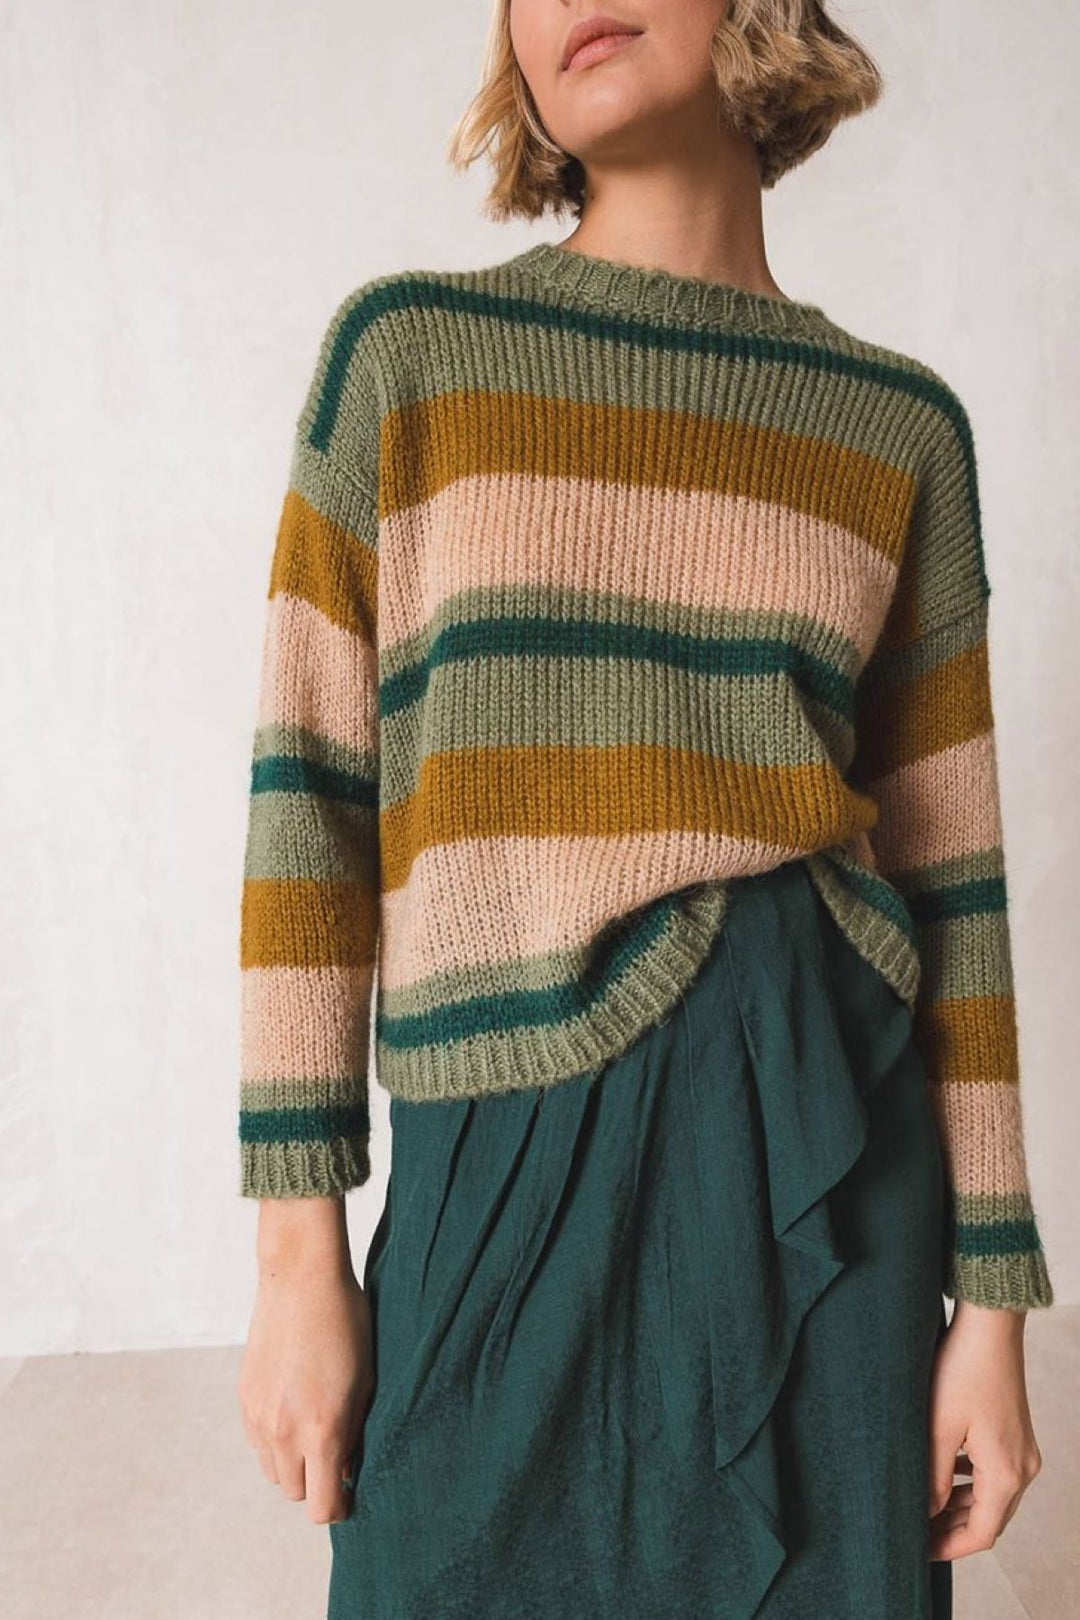 Multicolored striped sweater